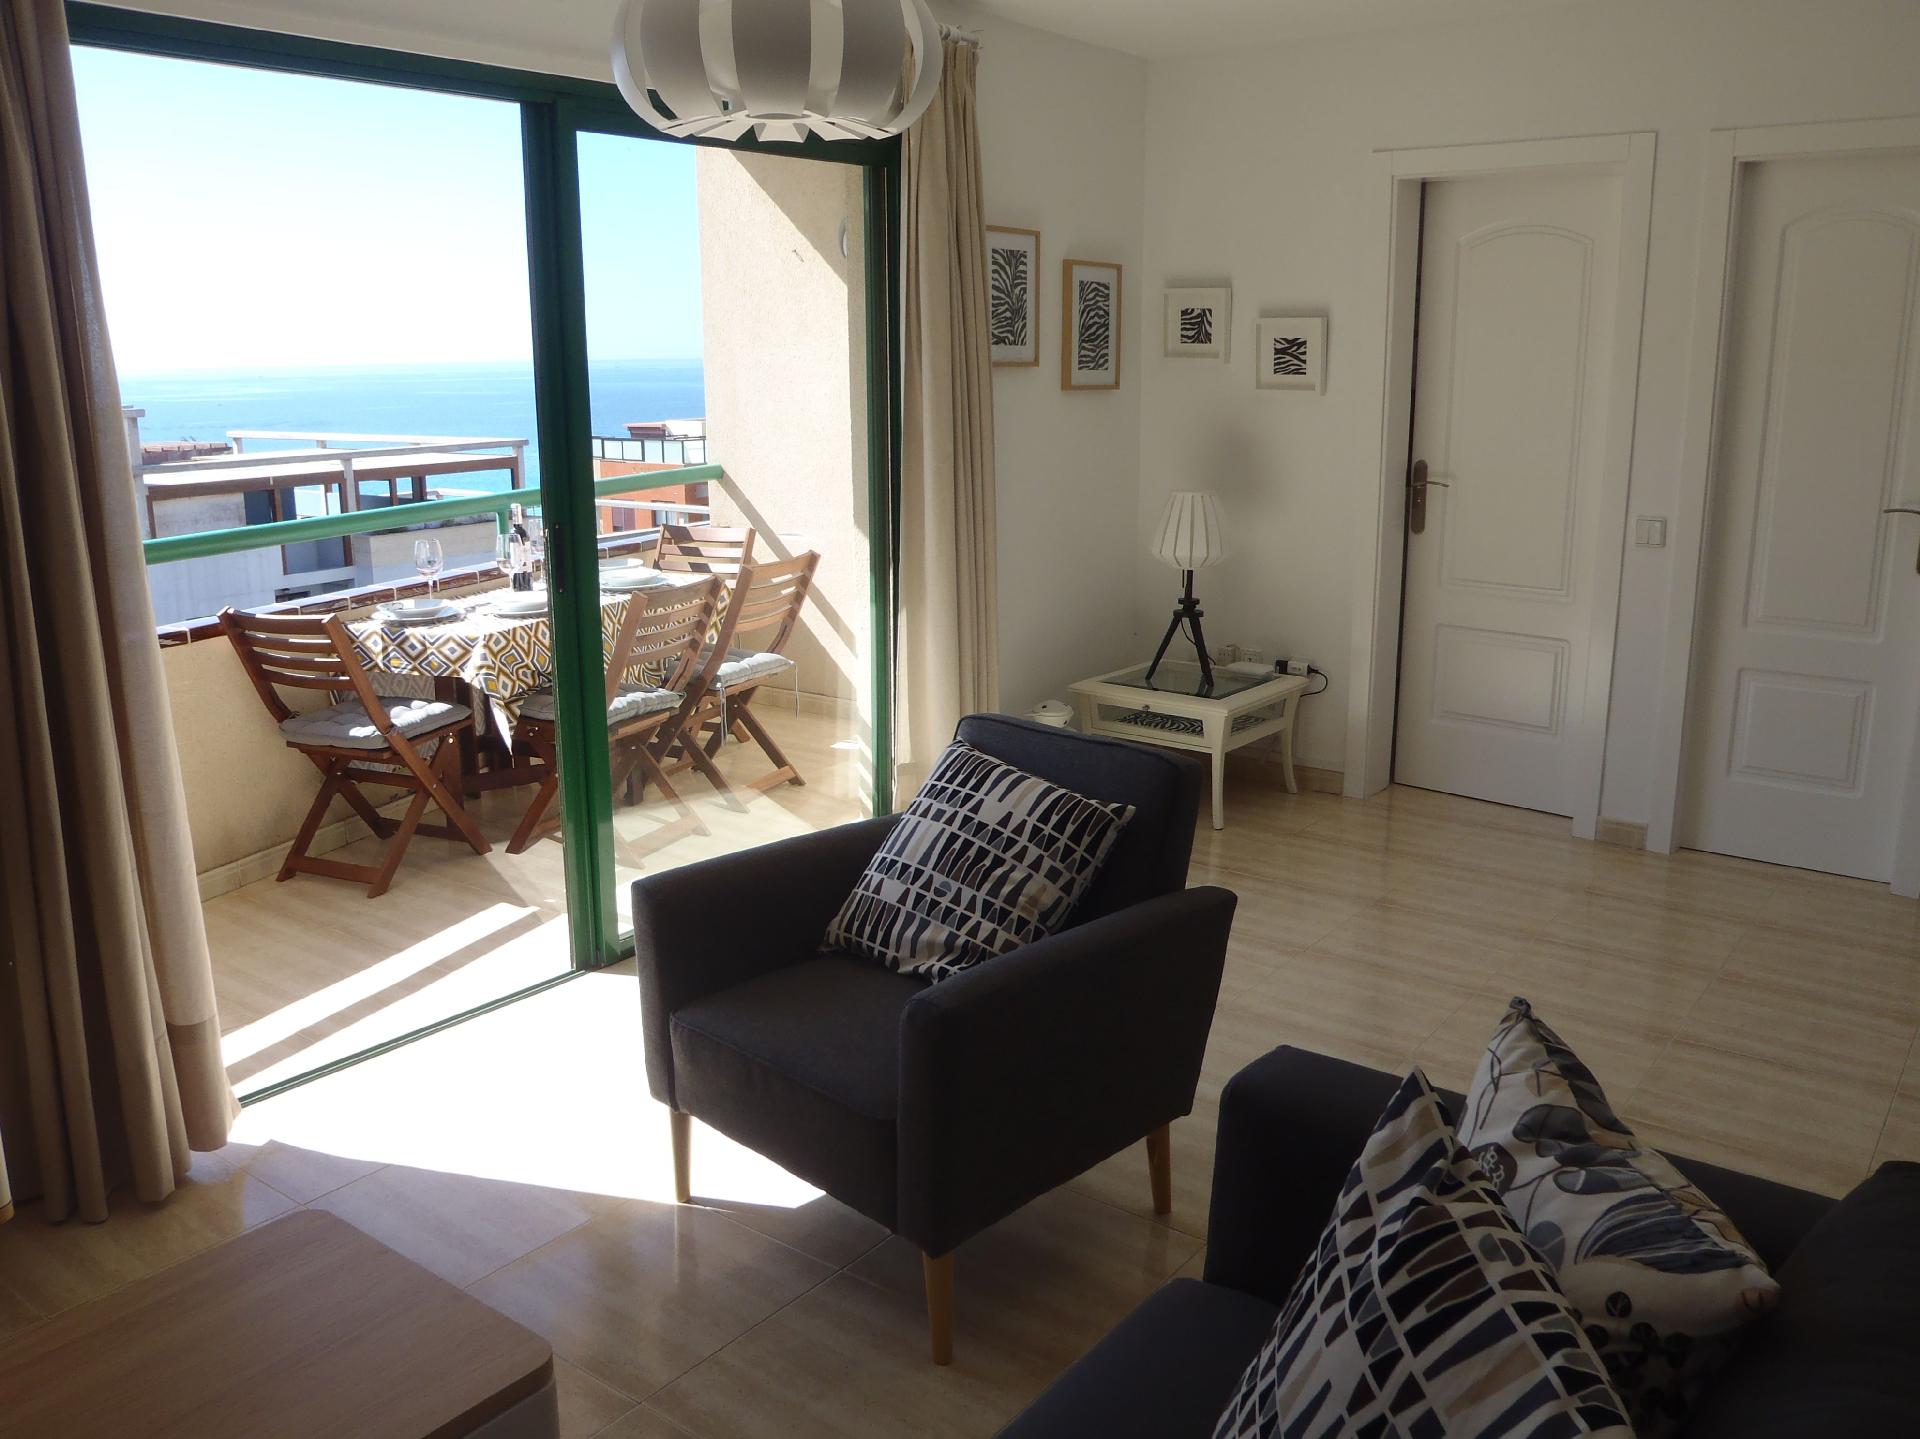 Ferienwohnung für 4 Personen ca. 78 m² i  in Spanien